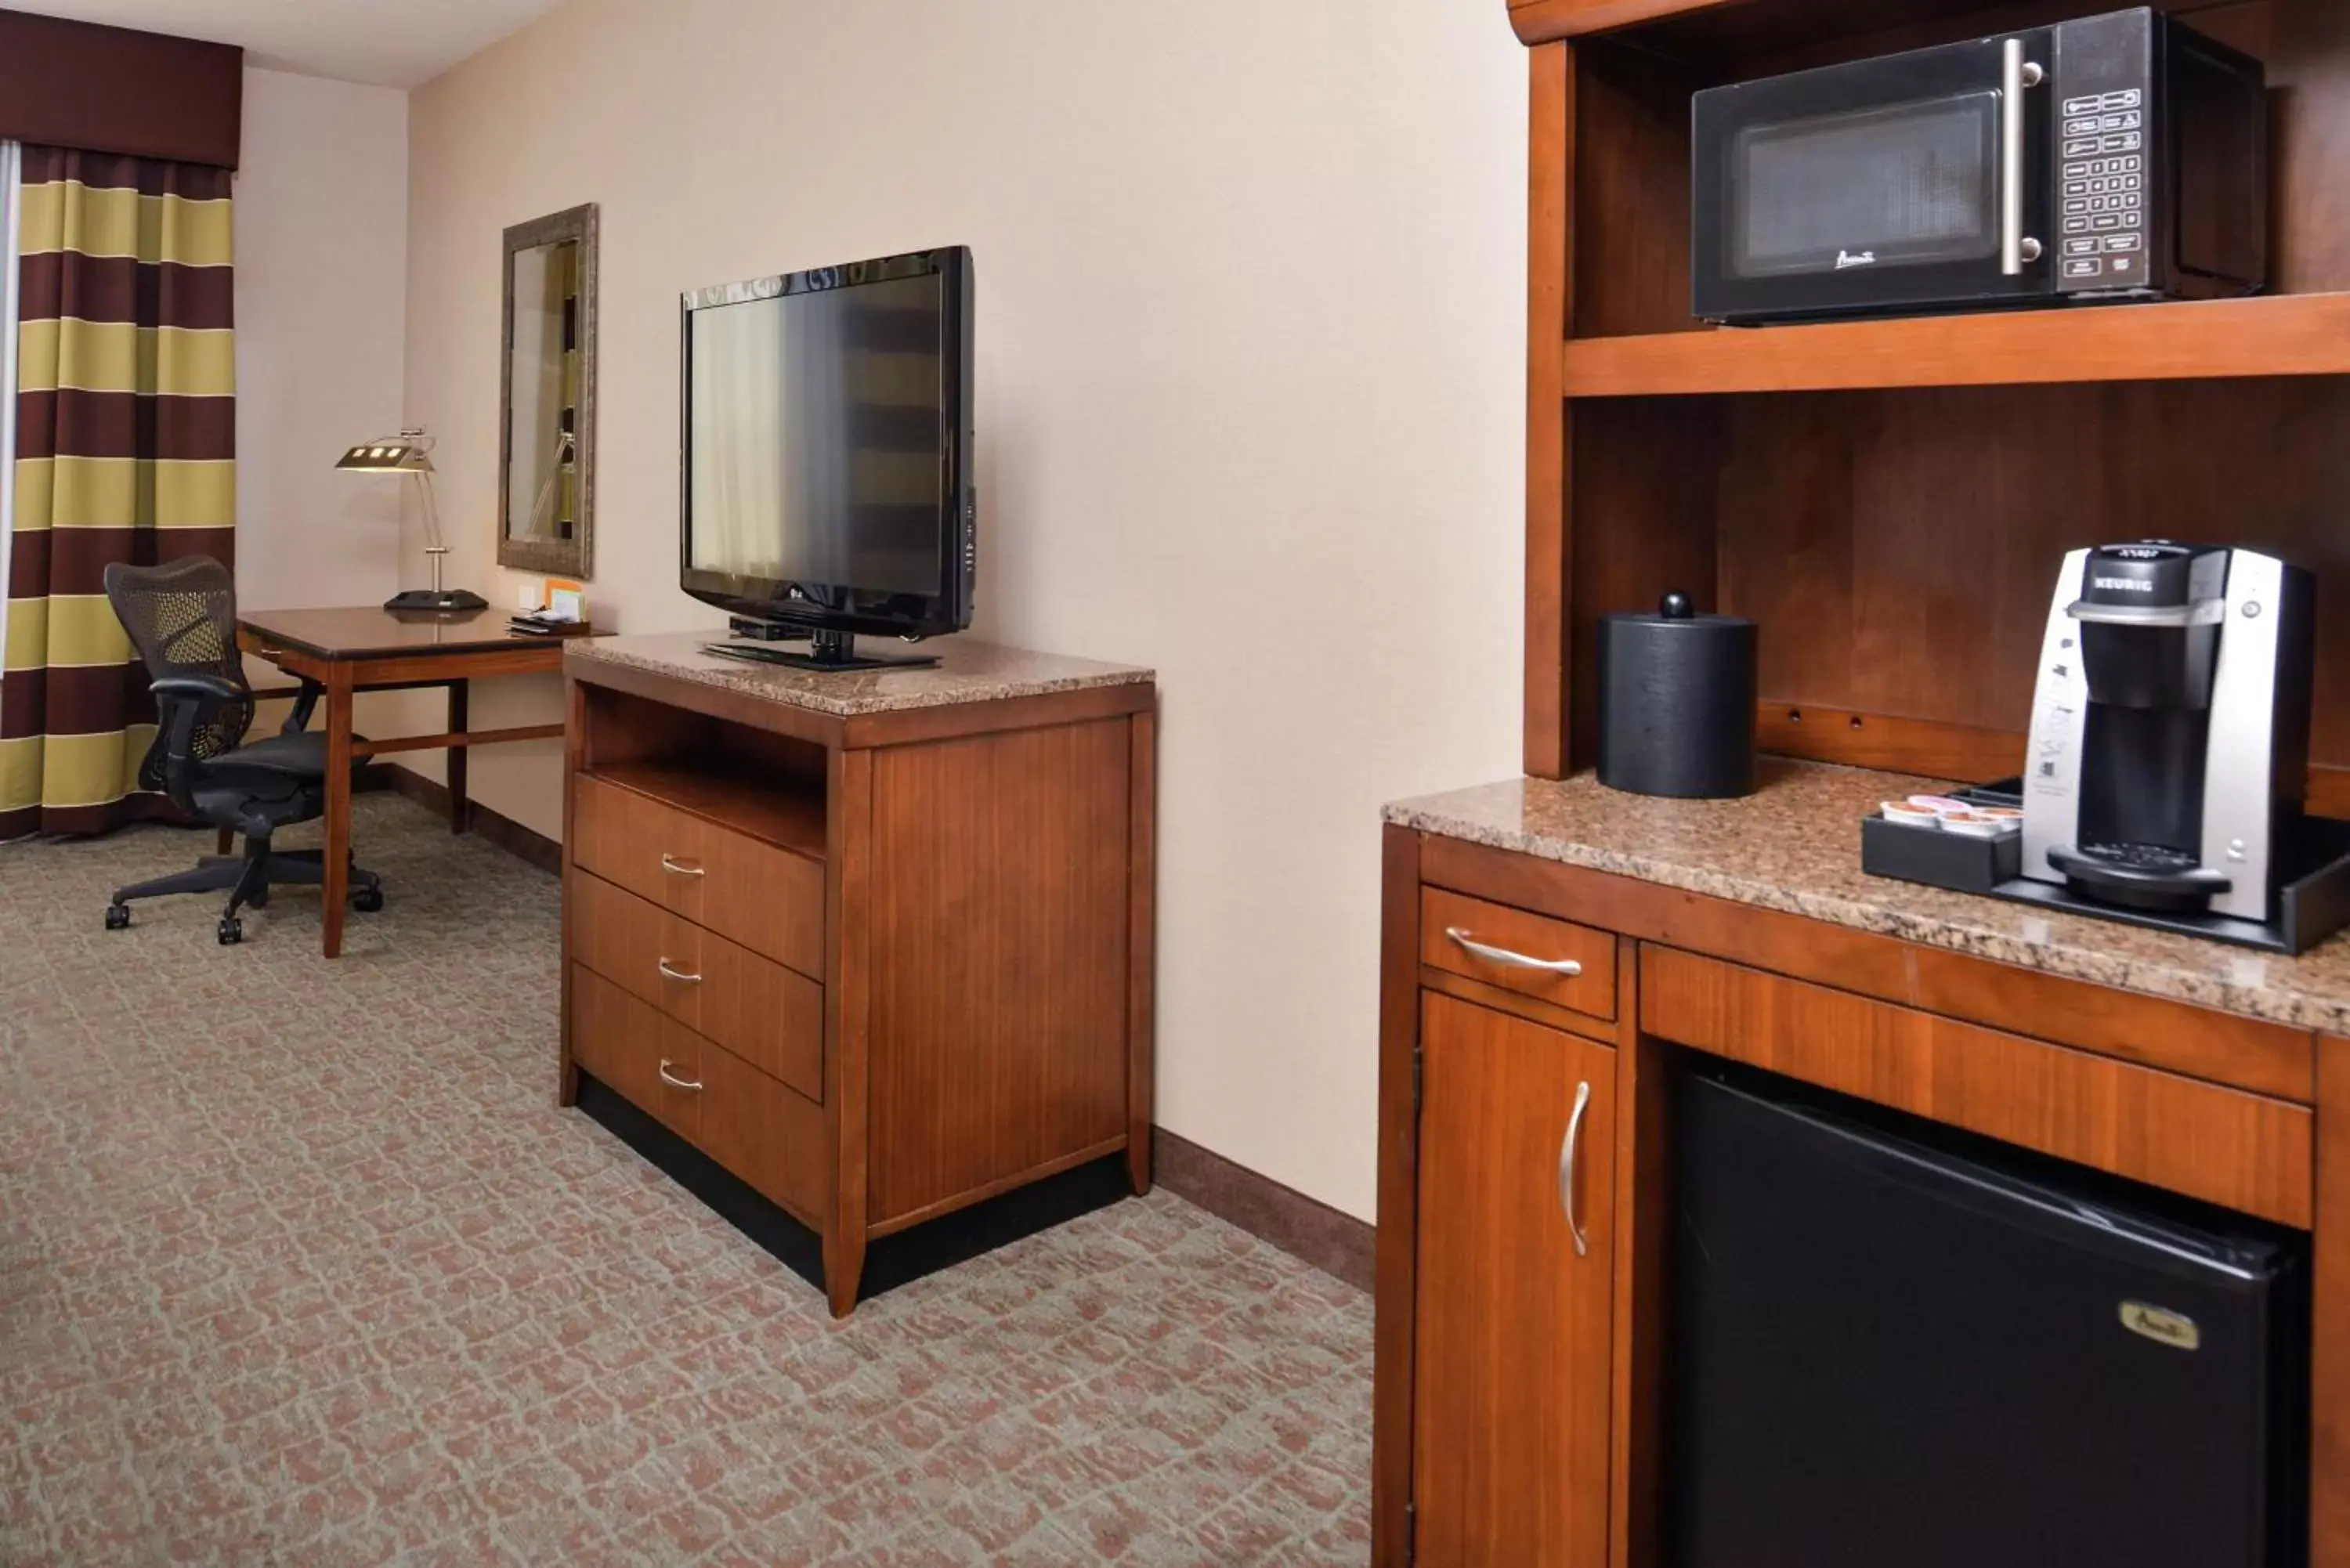 Bedroom, TV/Entertainment Center in Hilton Garden Inn Boise Spectrum